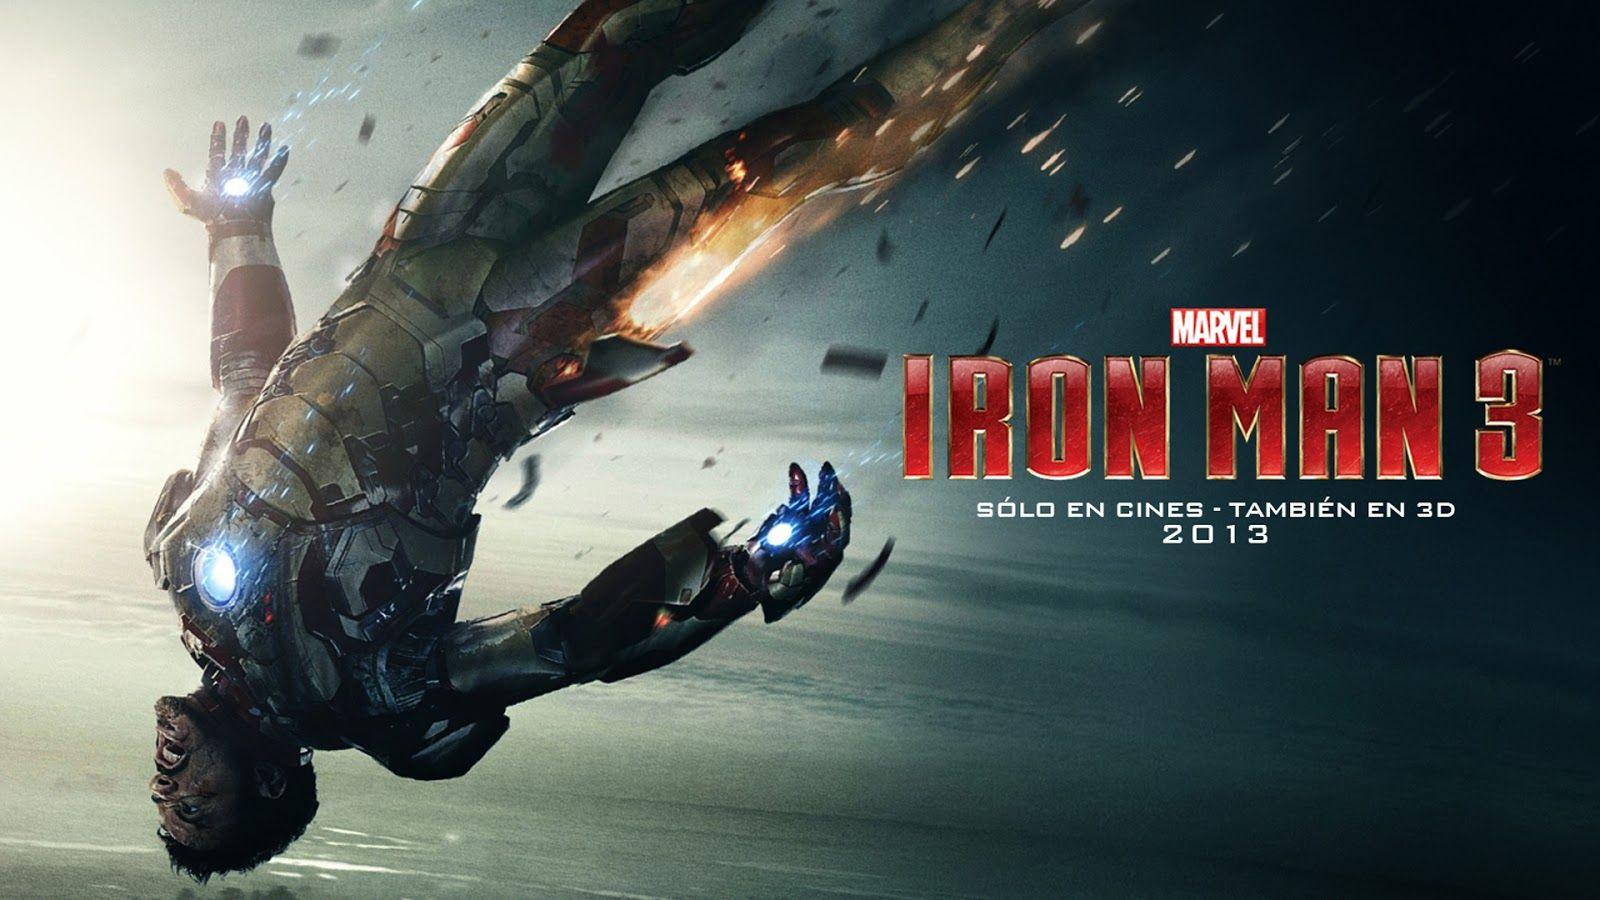 Iron Man 3 2013 HD wallpaper 1080p. HD Wallpaper High